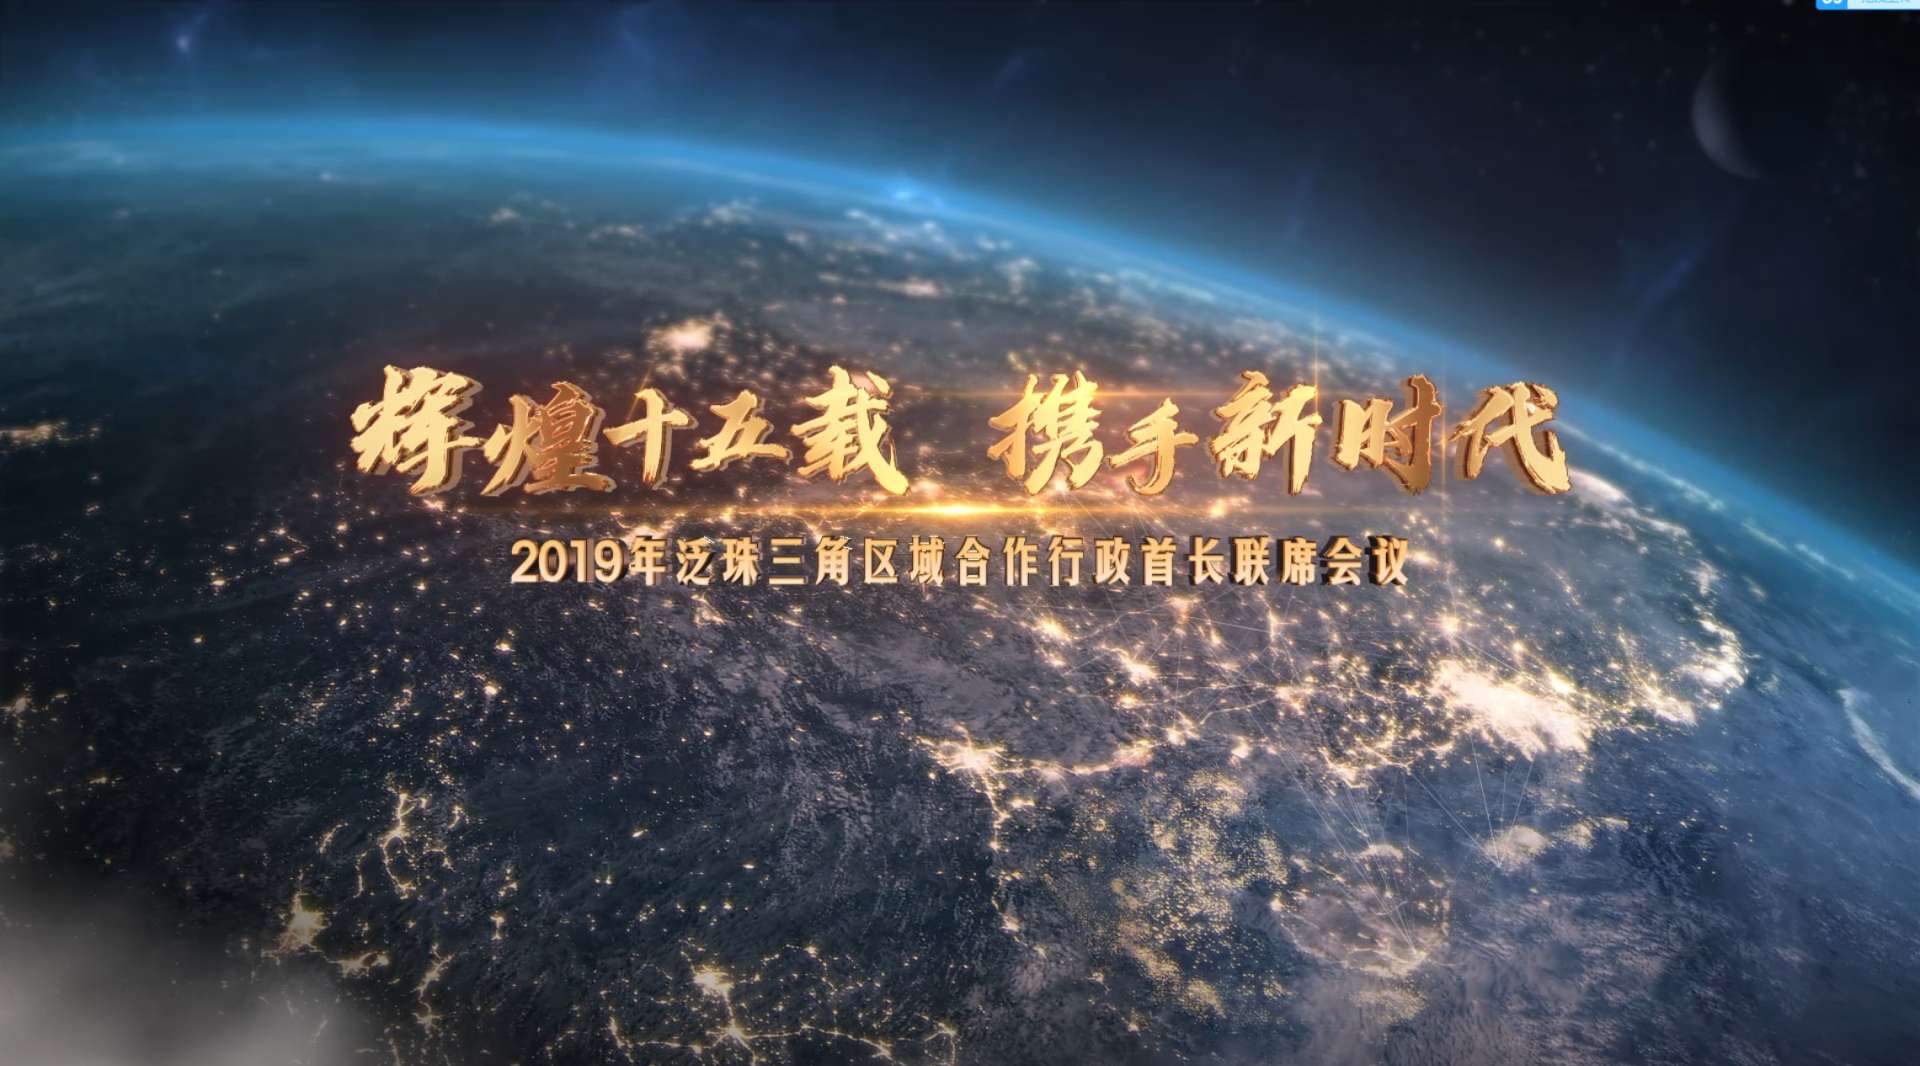 2019泛珠三角合作行政首长会议开幕式主题片《辉煌十五载 携手新时代》